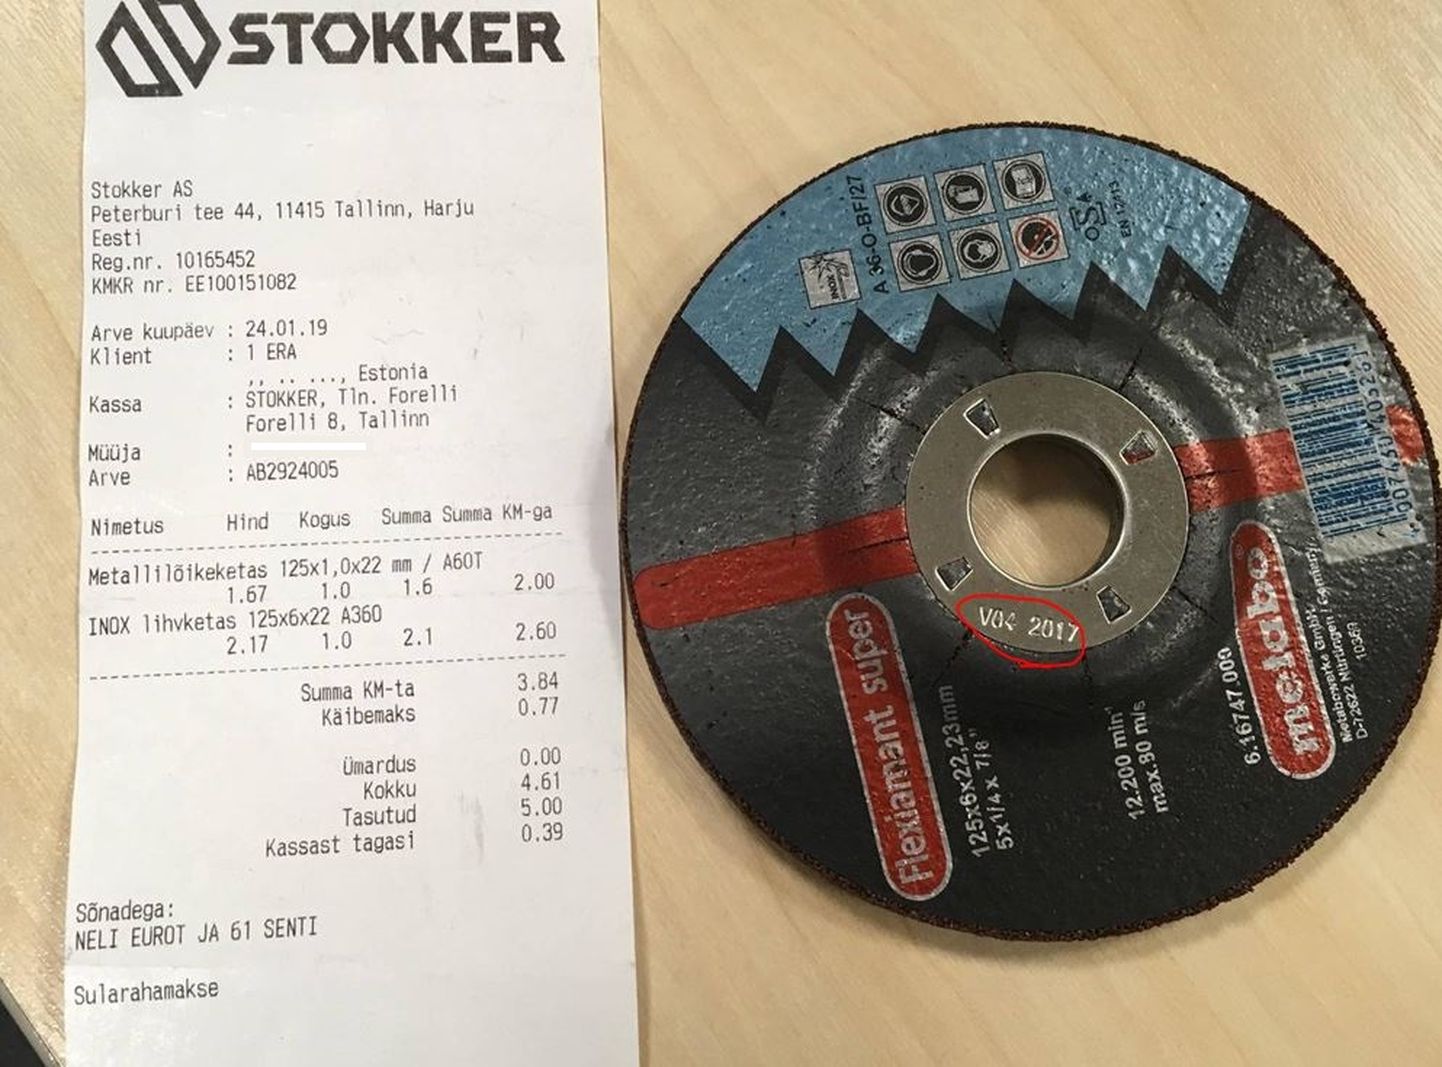 Дата, до которой следует использовать диск, уже давно прошла, но по чеку видно, что диск был куплен в магазине в 2019 году.